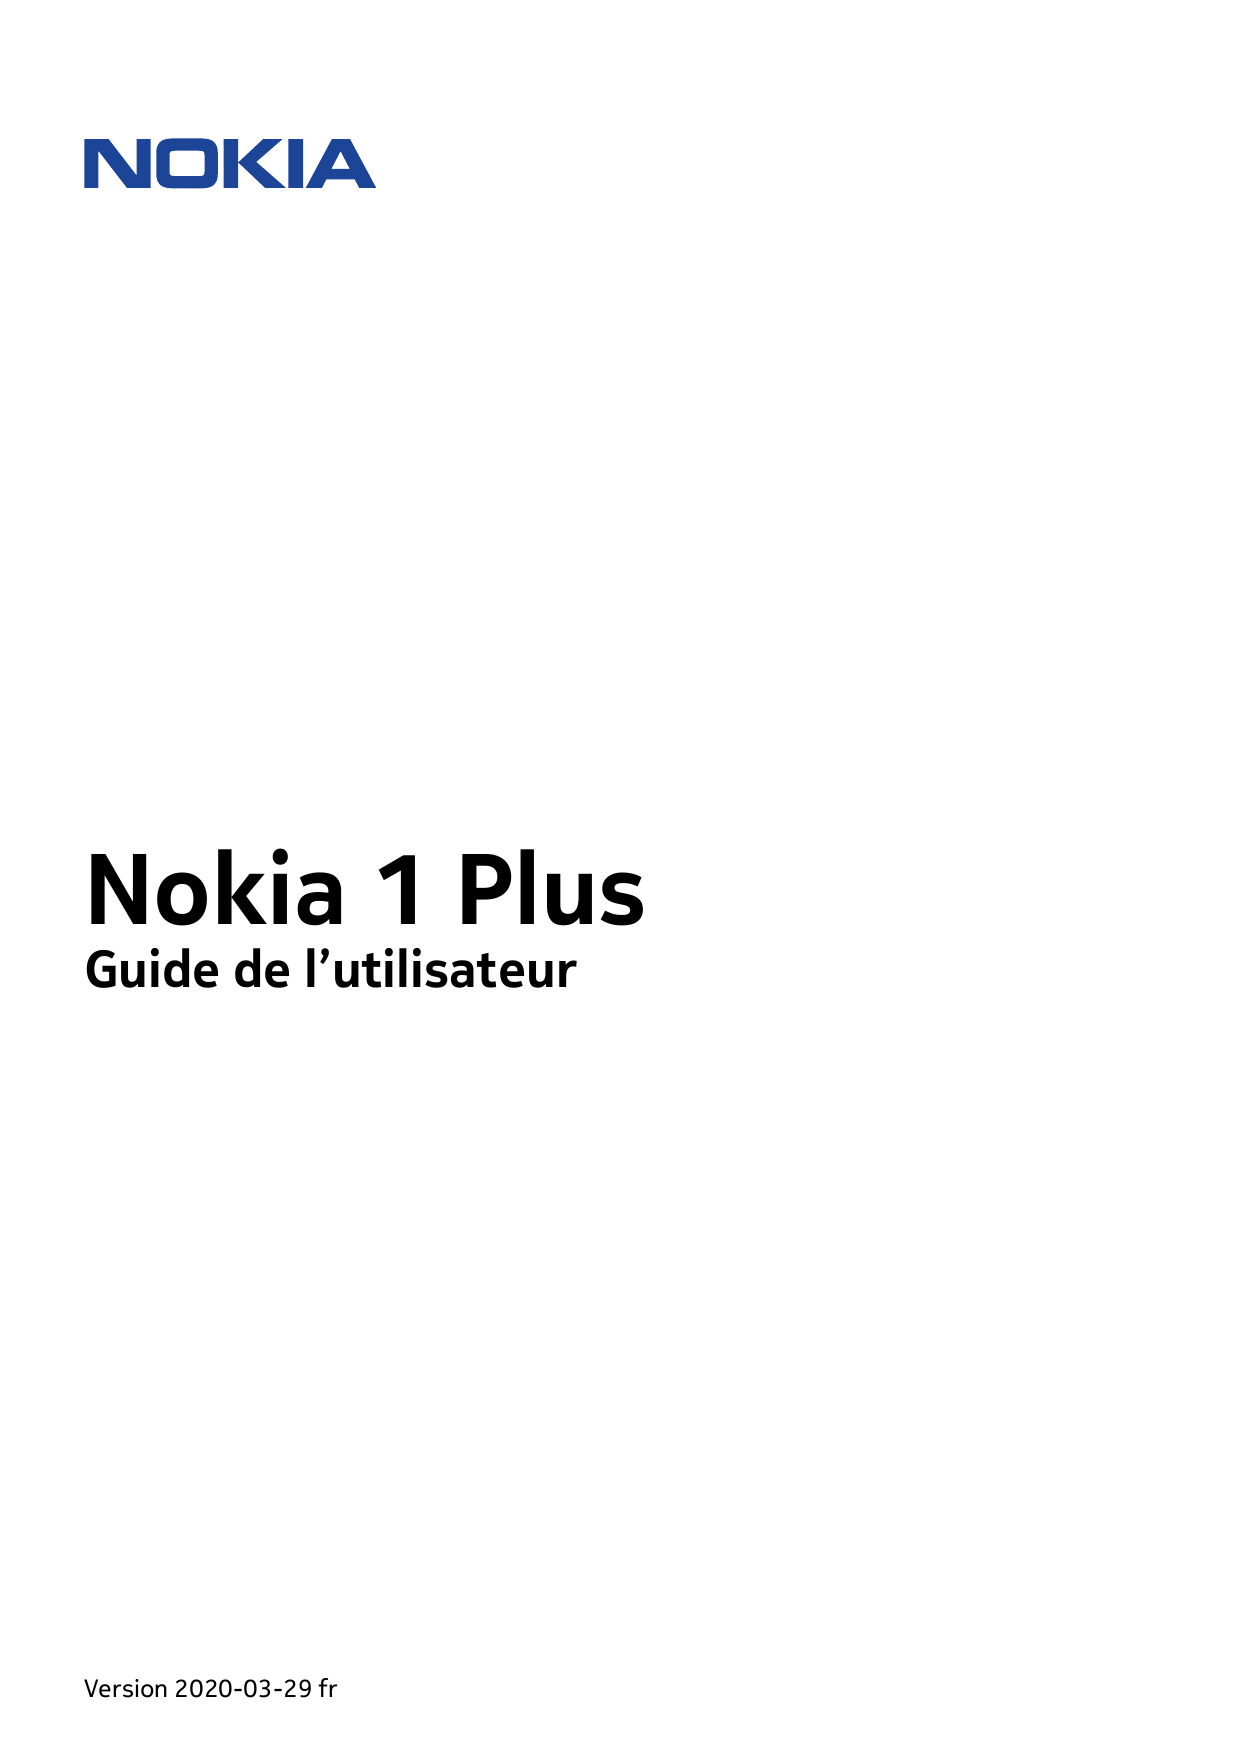 Nokia 1 PlusGuide de l’utilisateurVersion 2020-03-29 fr